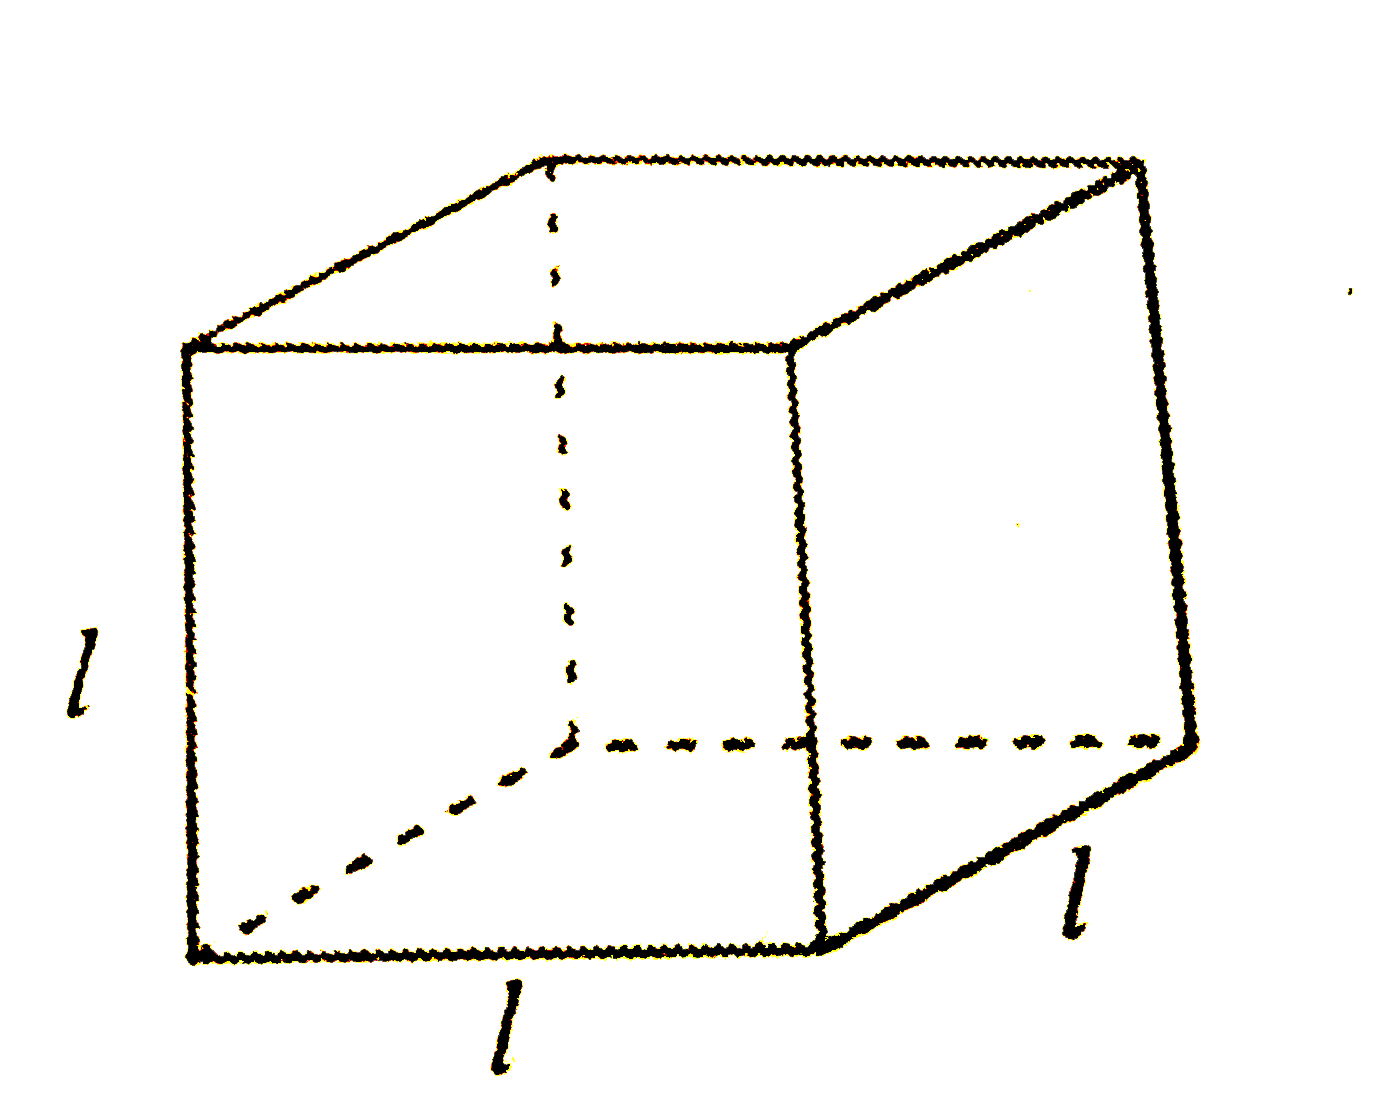 घन एक त्रिविमीय आकृति होती हे, जैसा की आकृति में दिखाया गया है। इसके 6 फलक होते है और ये सभी सर्वसम वर्ग होते है। घन के एक  घन के एक किनारे की लम्बाई l से दी जाती हैं। घन के किनारों की कुल लम्बाई के लिए एक सूत्र ज्ञात कीजिए।